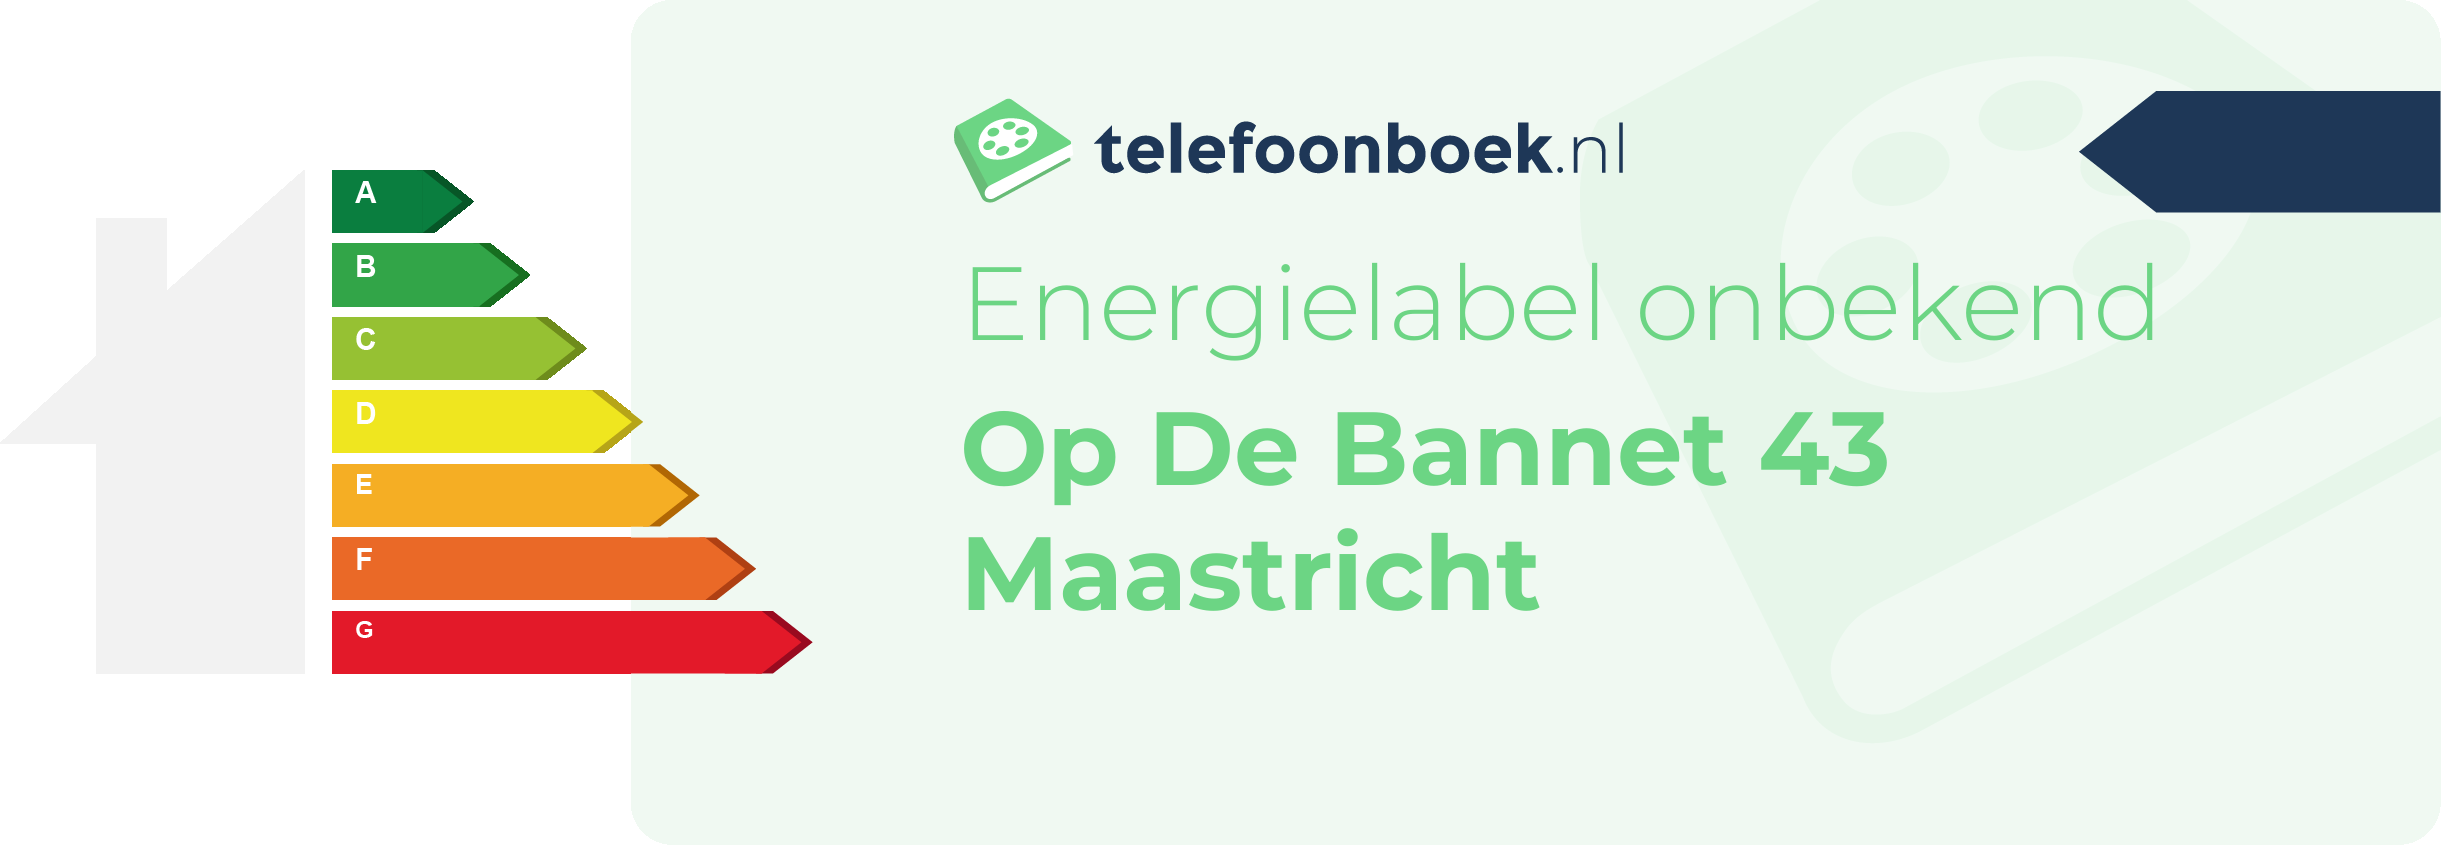 Energielabel Op De Bannet 43 Maastricht